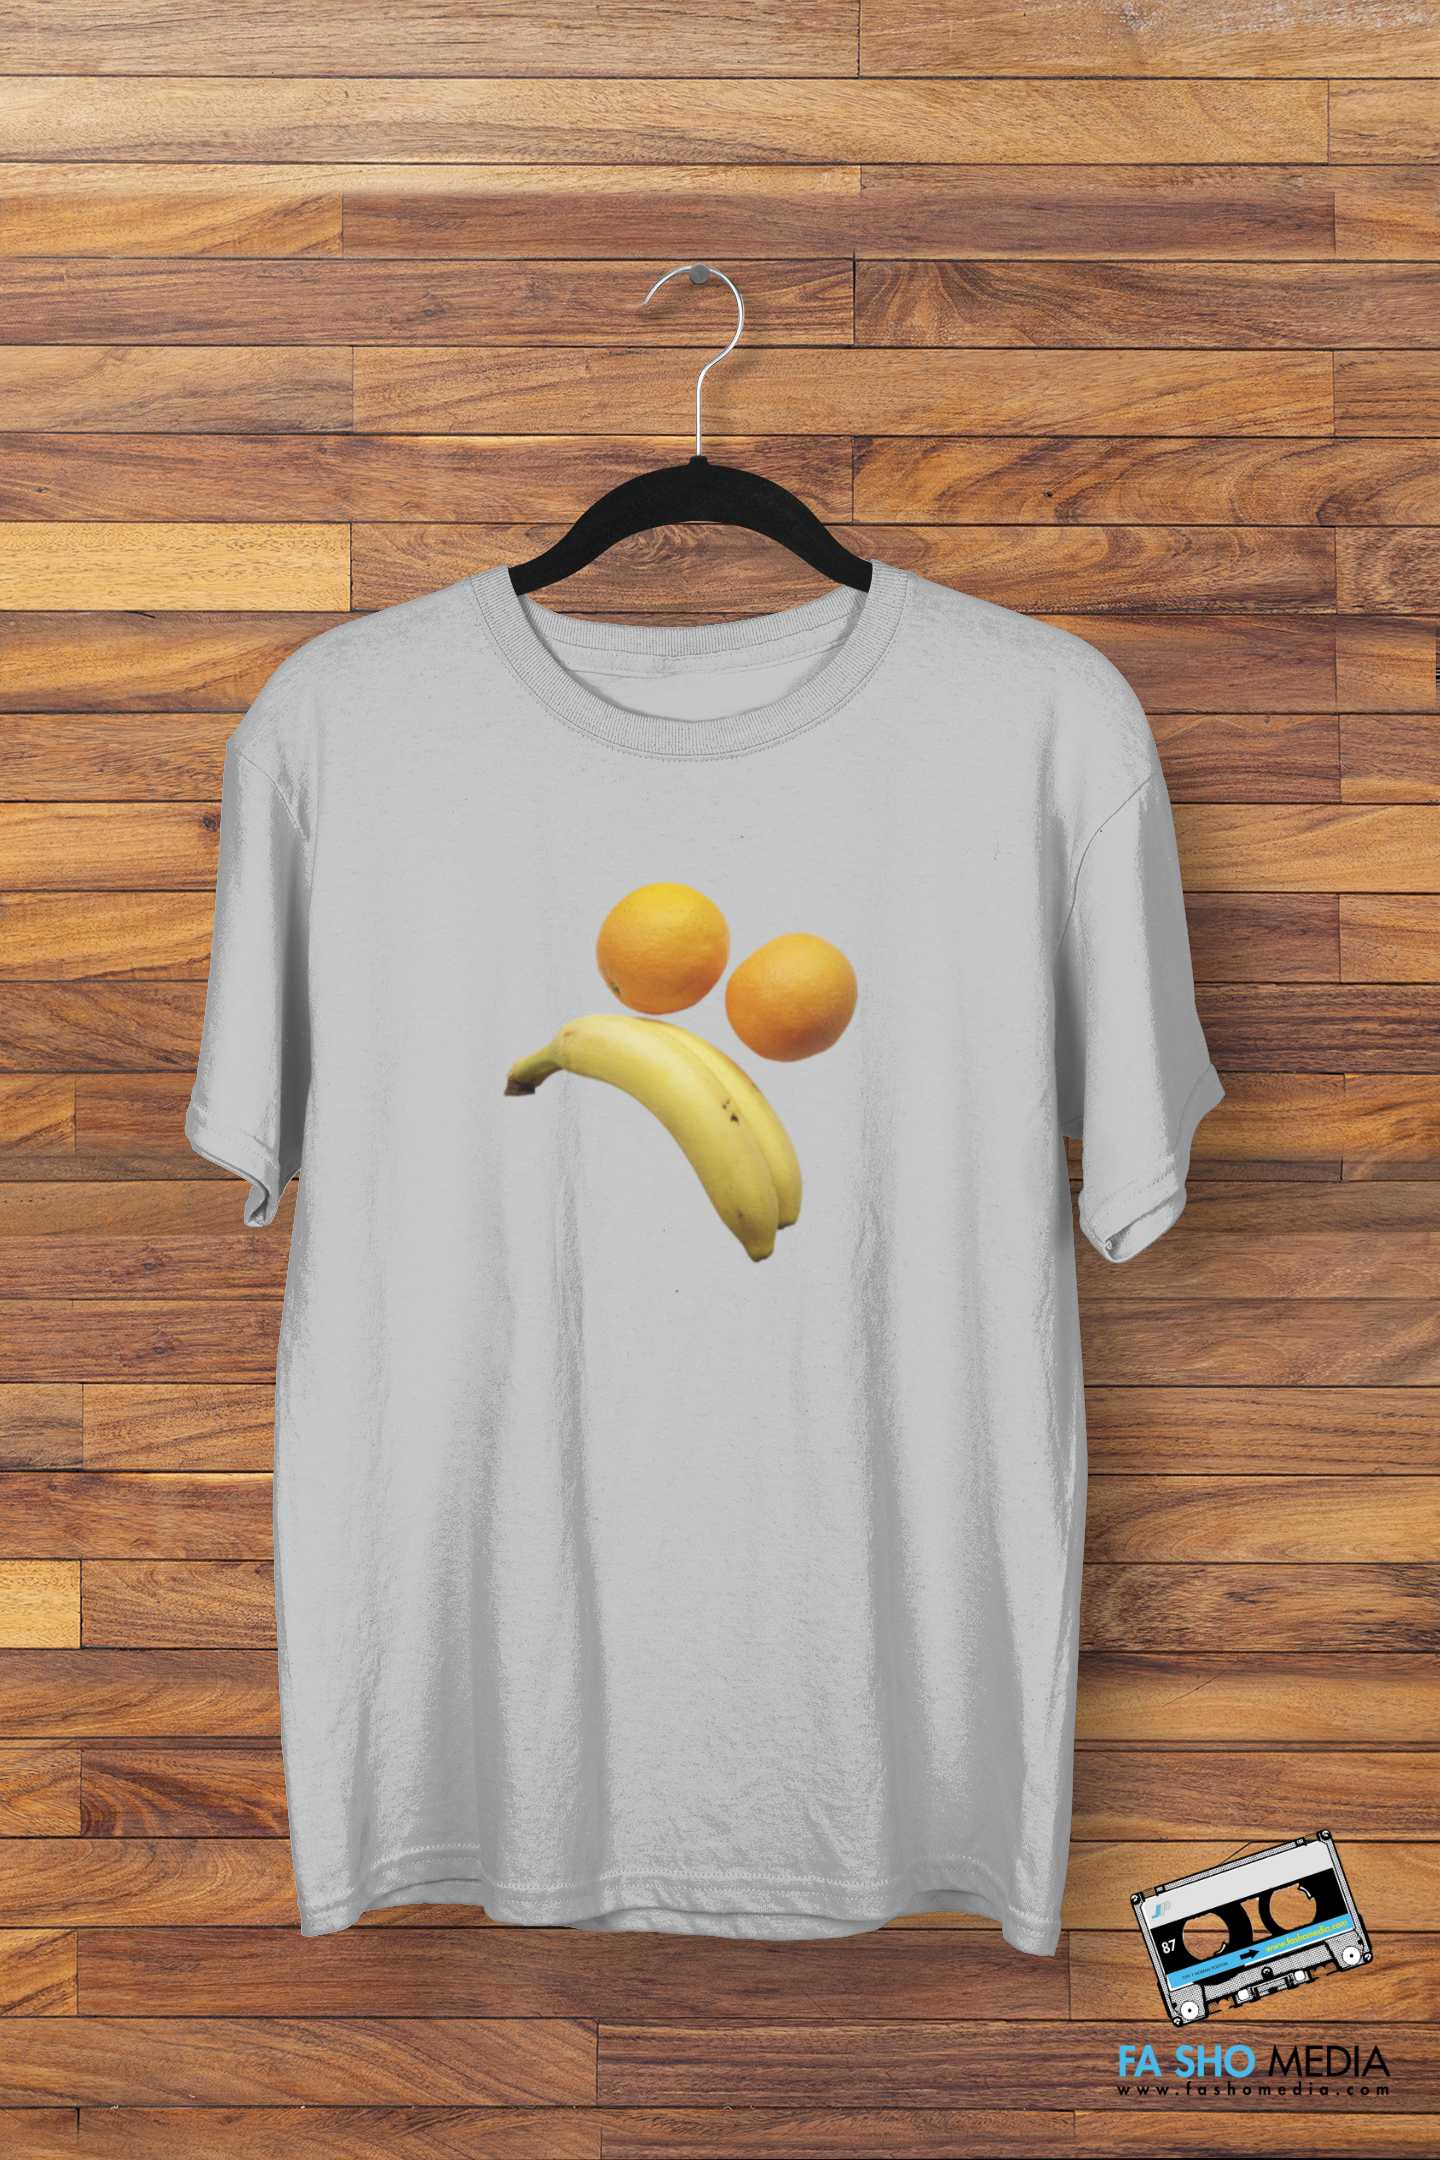 Sad Fruit Face Shirt (Men's)